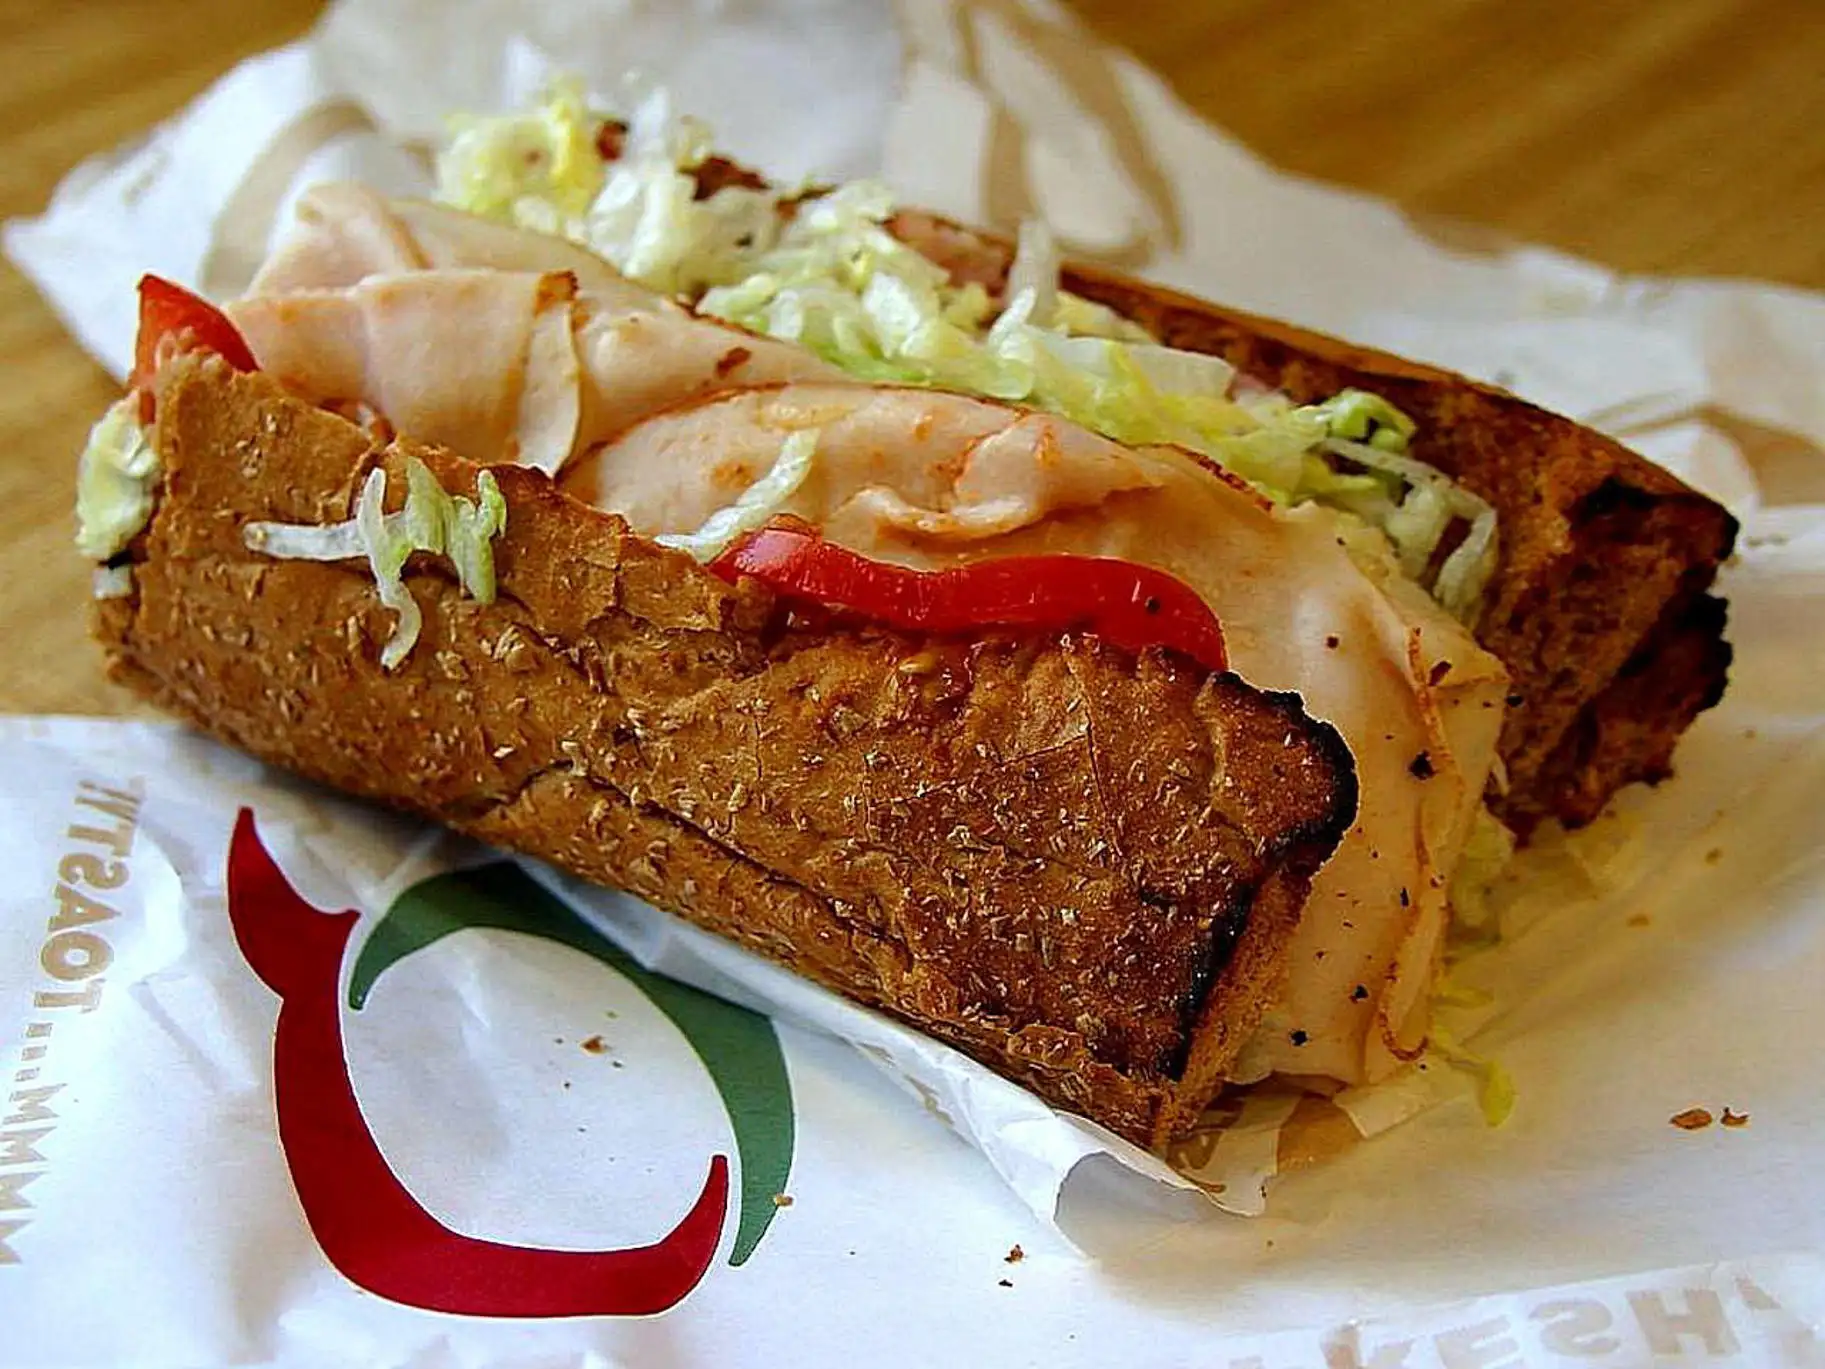 Quiznos sub sandwich